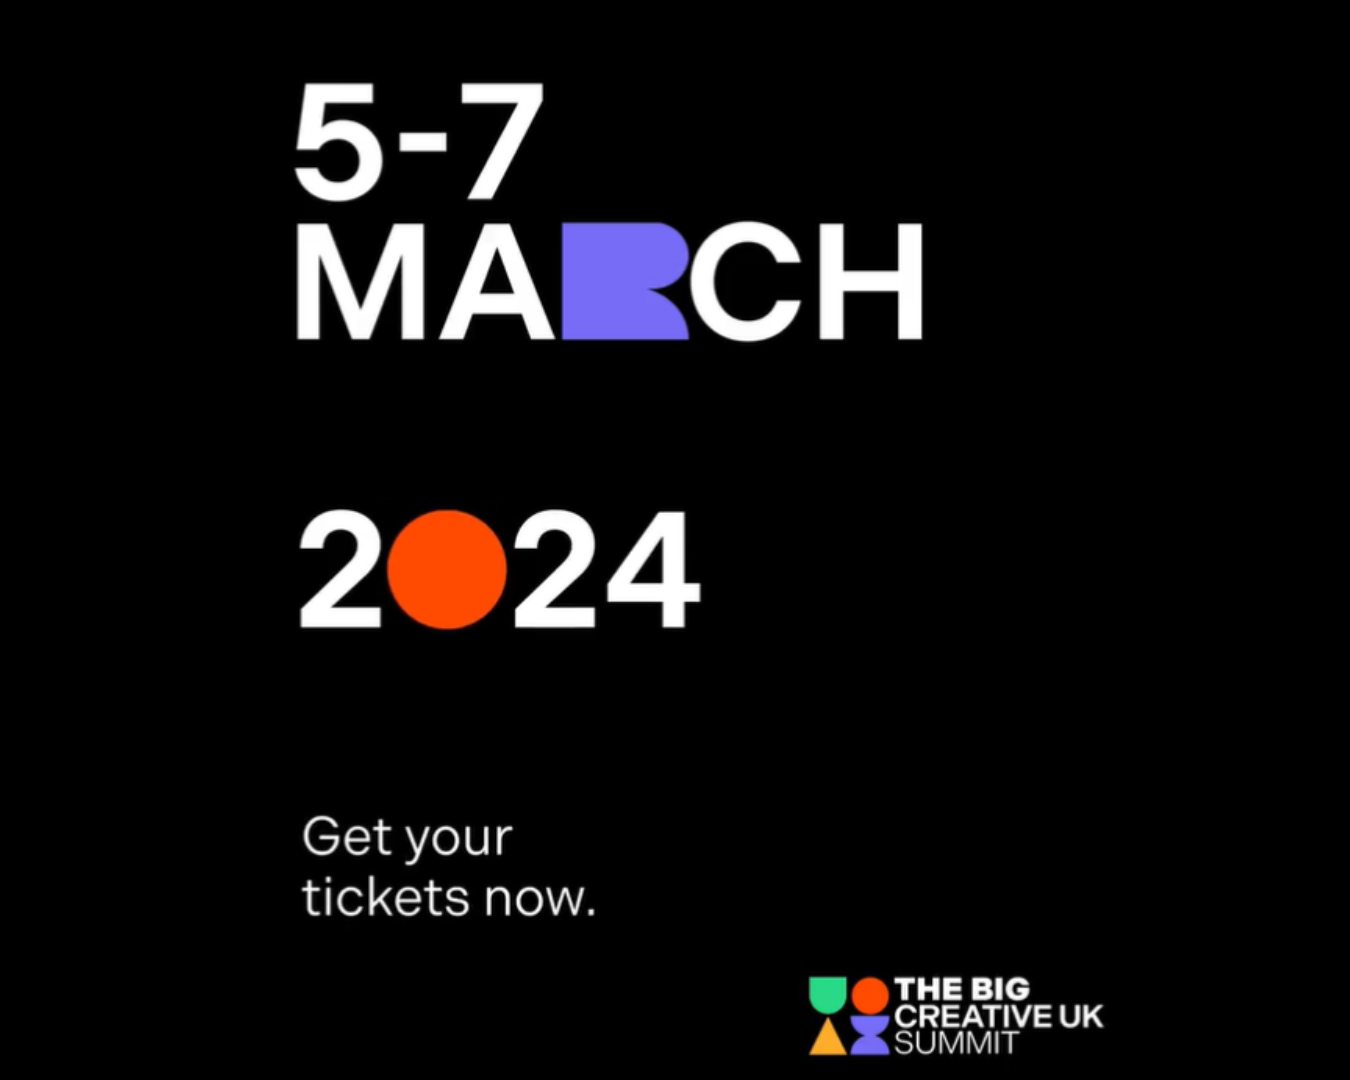 The Big Creative UK Summit